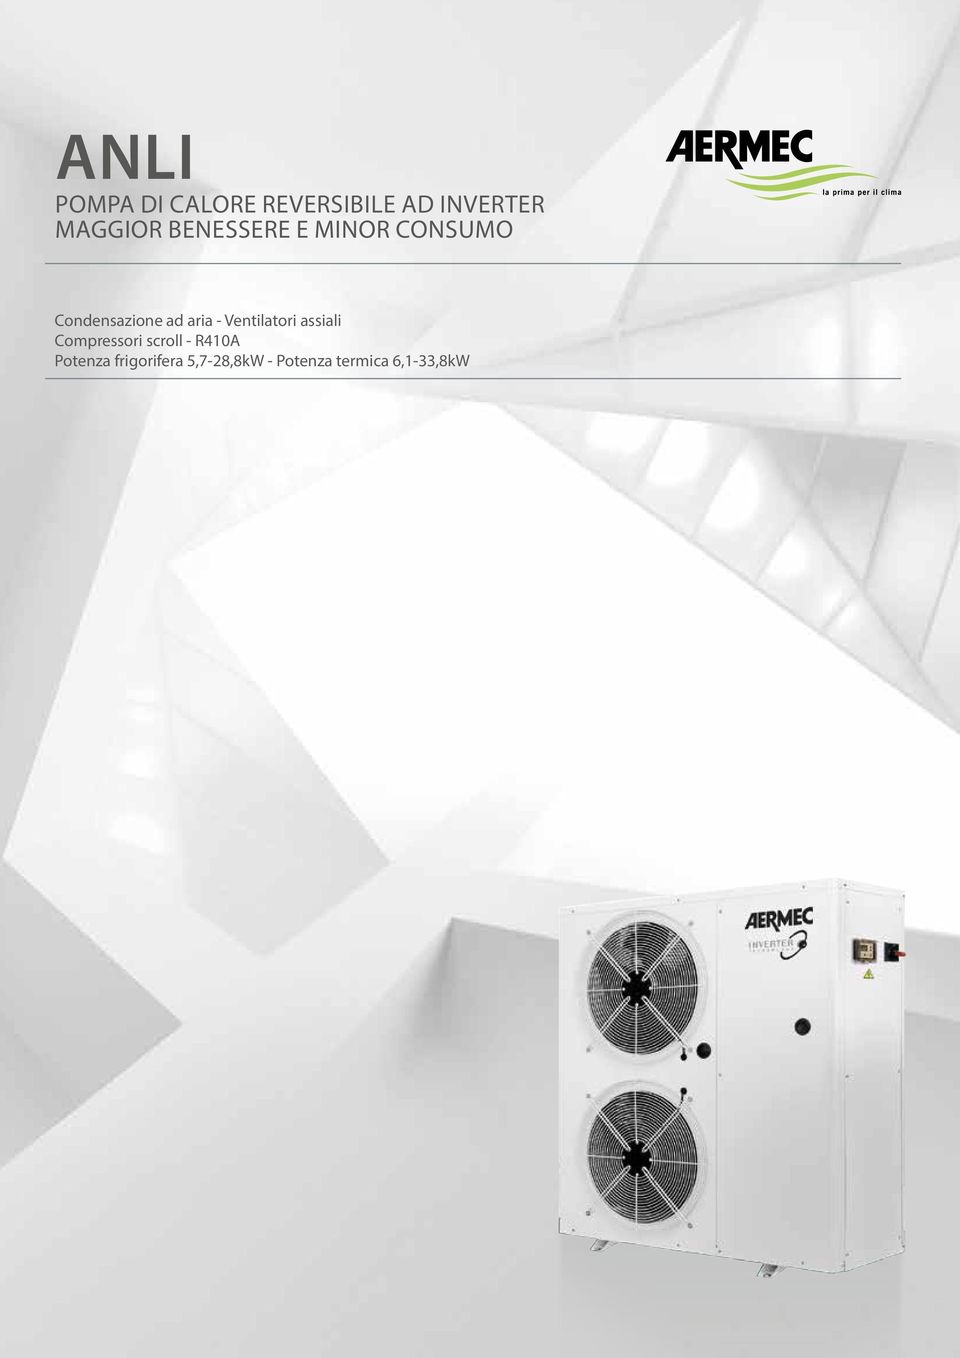 Ventilatori assiali Compressori scroll - R410A